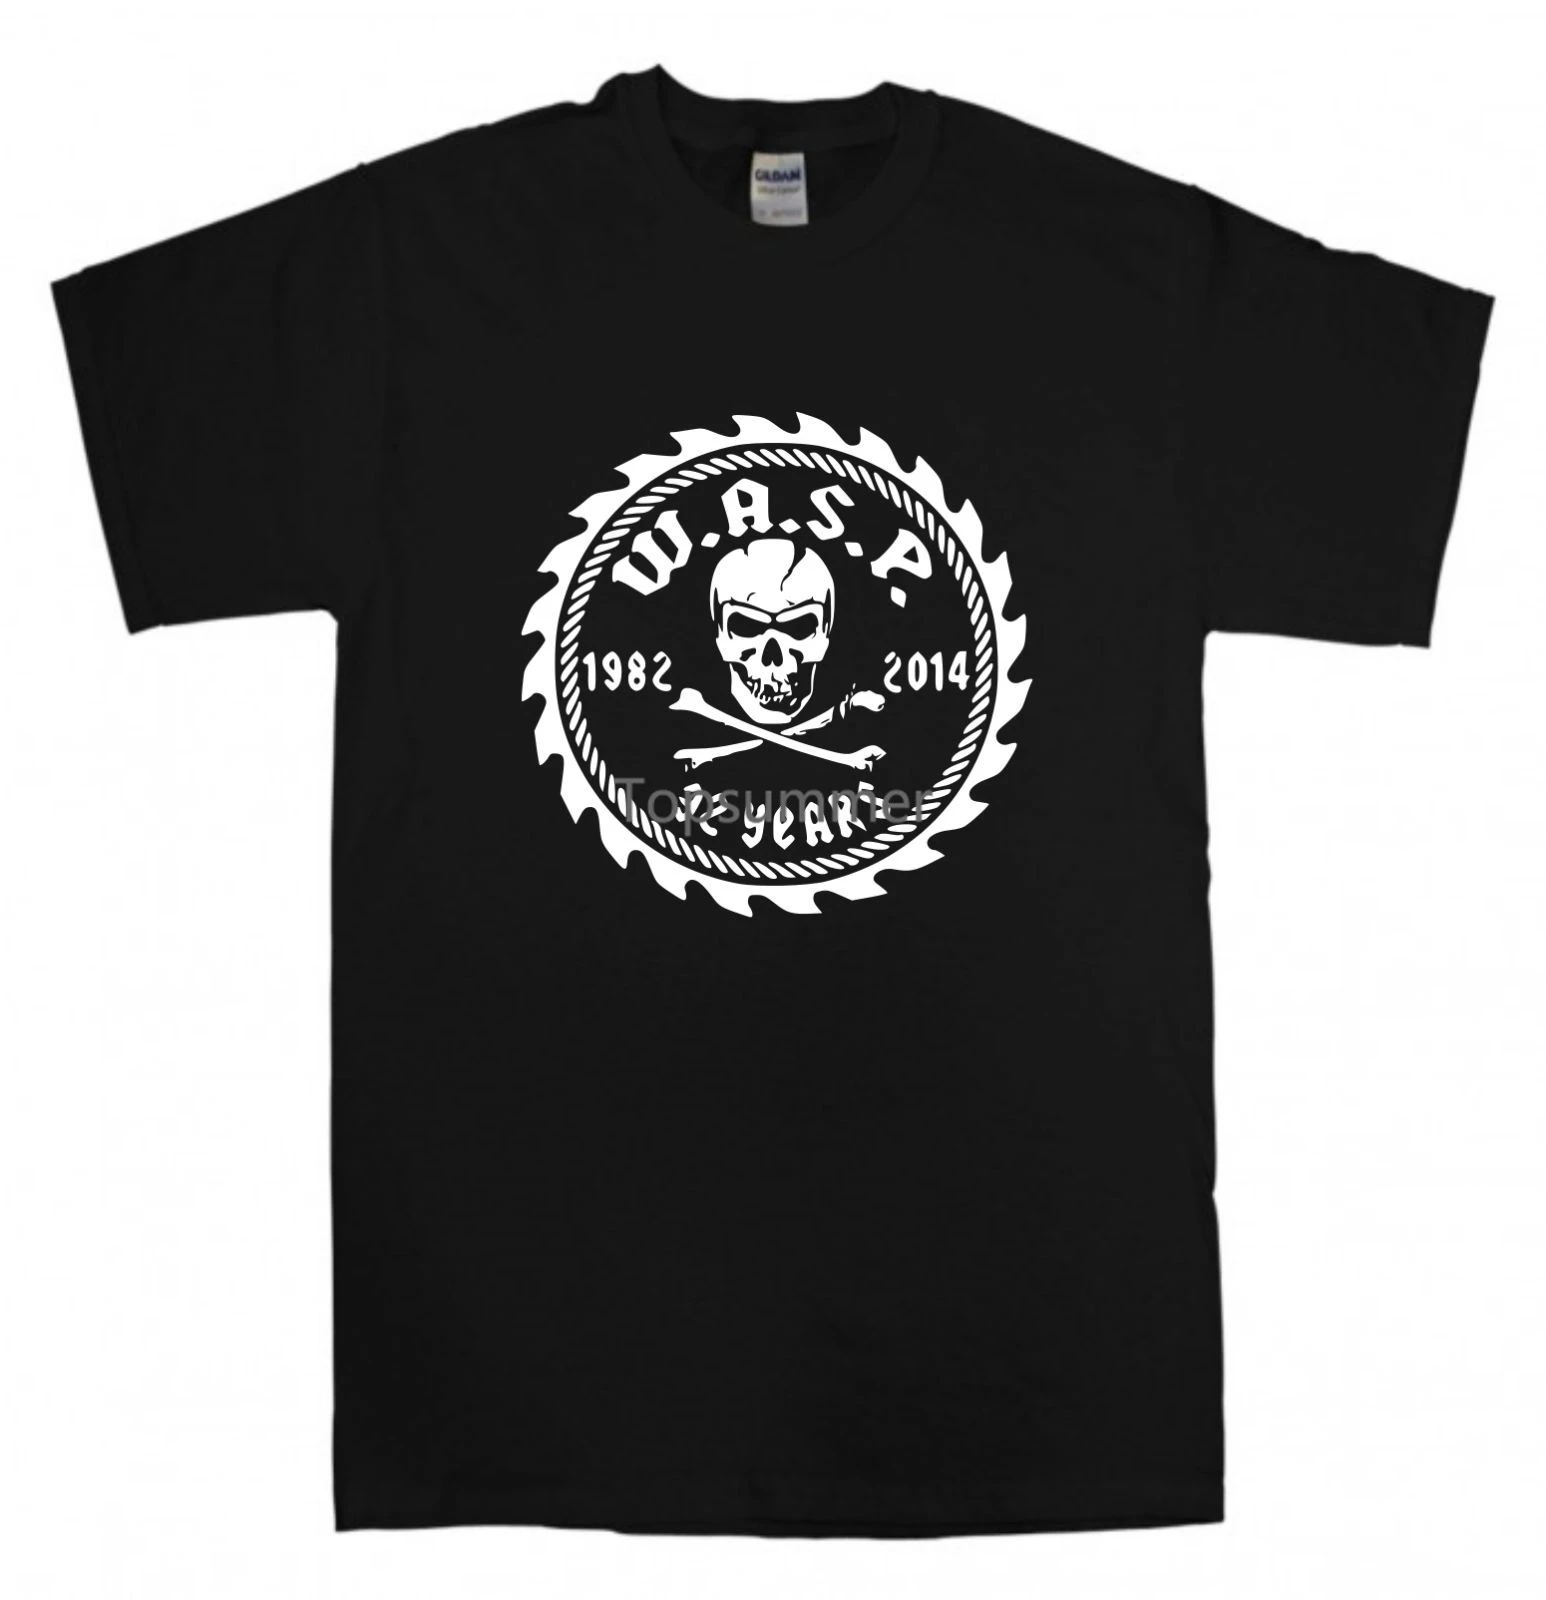 

W.A.S.P. Новинка, черная футболка, Размеры S-Xxl, мужские футболки с ремешком из тяжелого металла в стиле 80-х с изображением священника из дракона